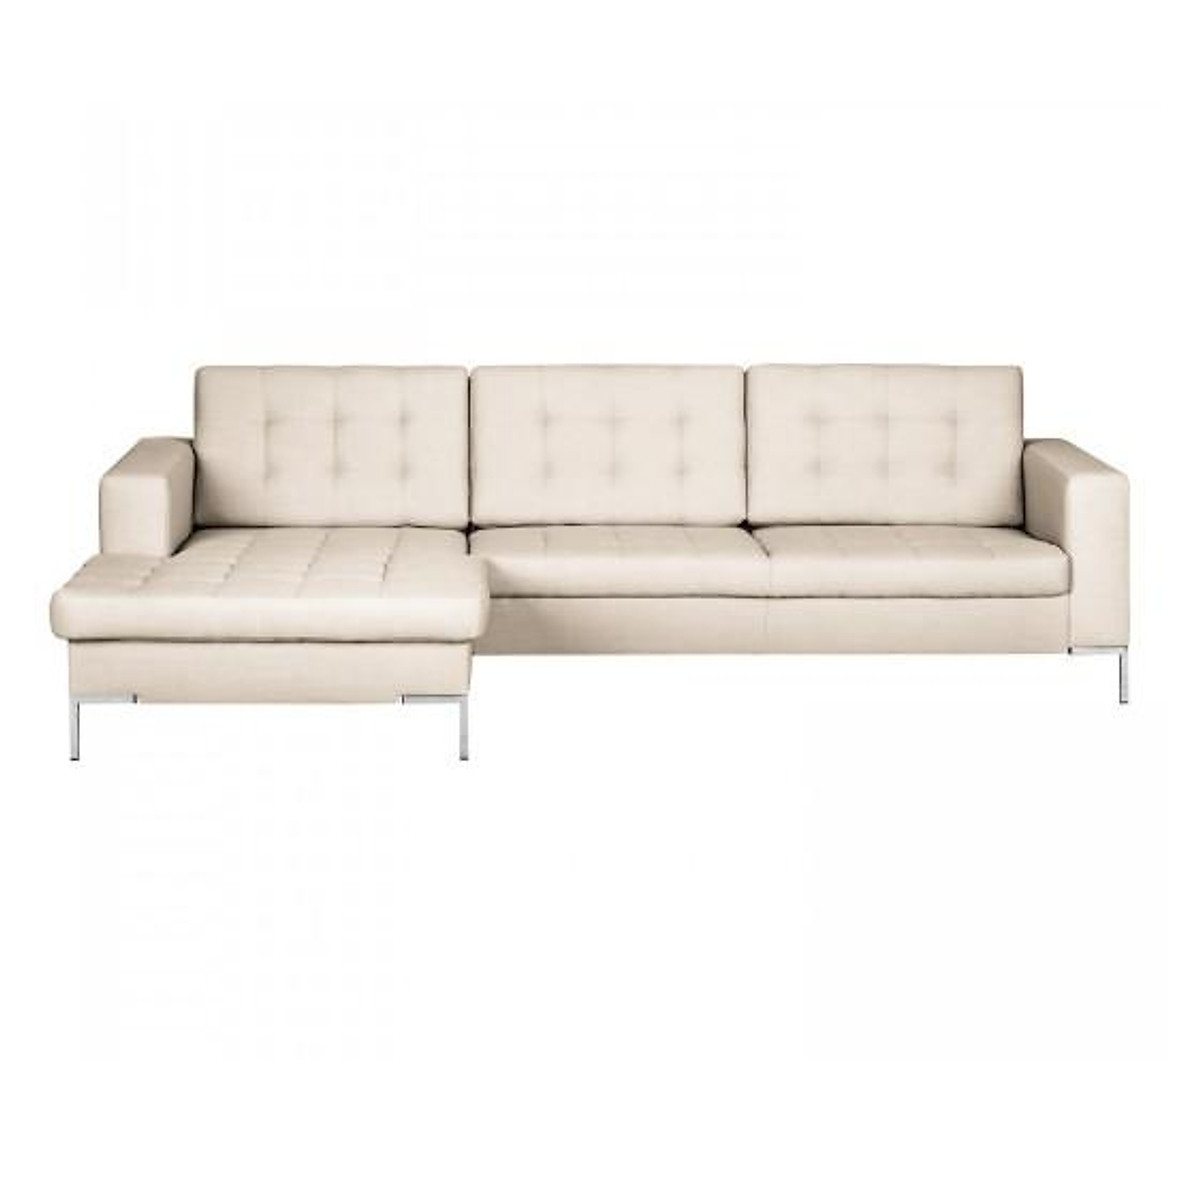 Sofa da góc L Tundo 2m5 x 1m6 màu kem nhạt nệm rút